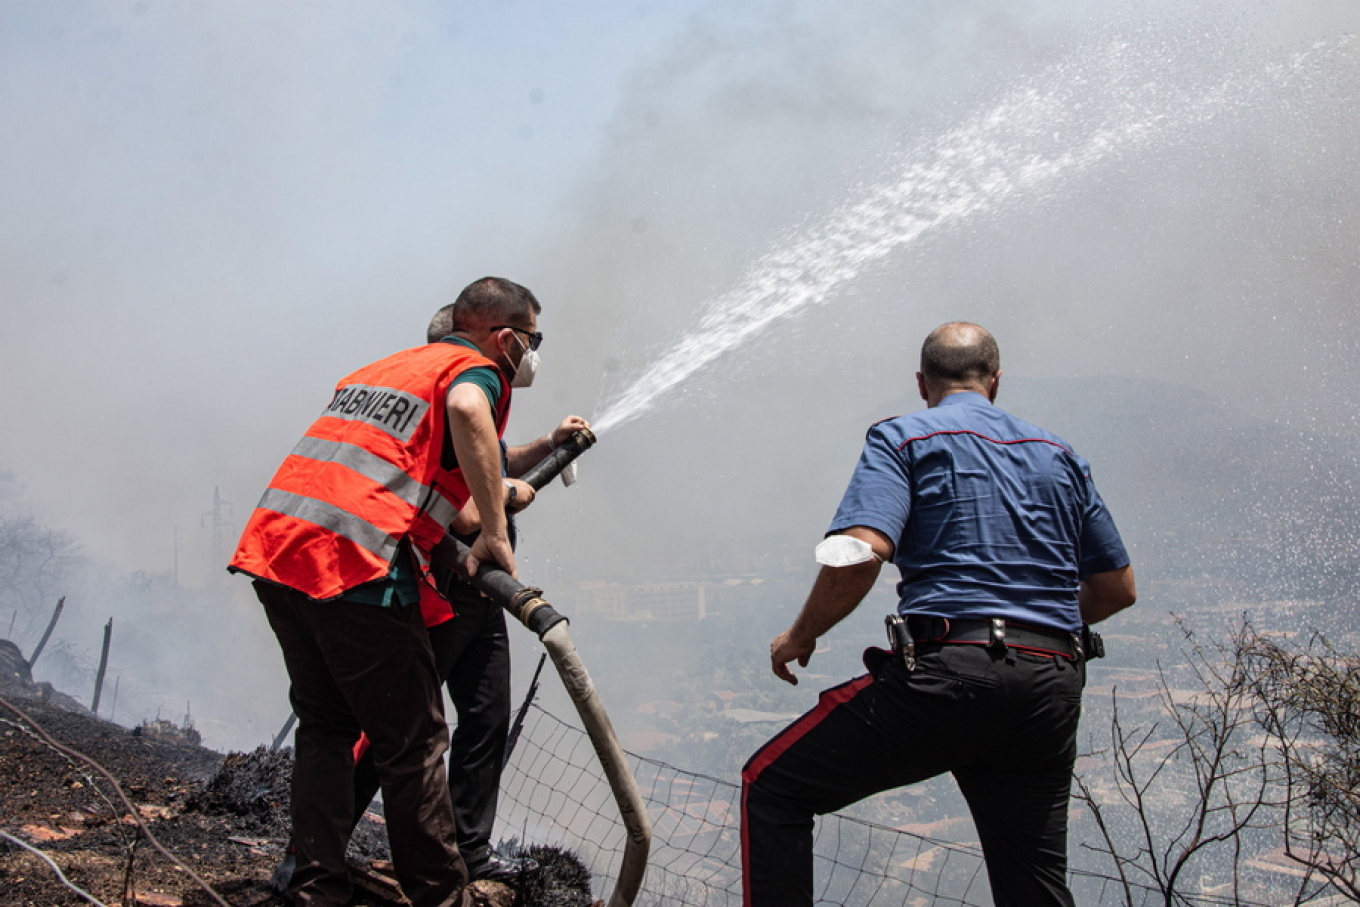 Humbin jetën dy persona nga zjarret në Sicili, evakuohet spitali në Palermo